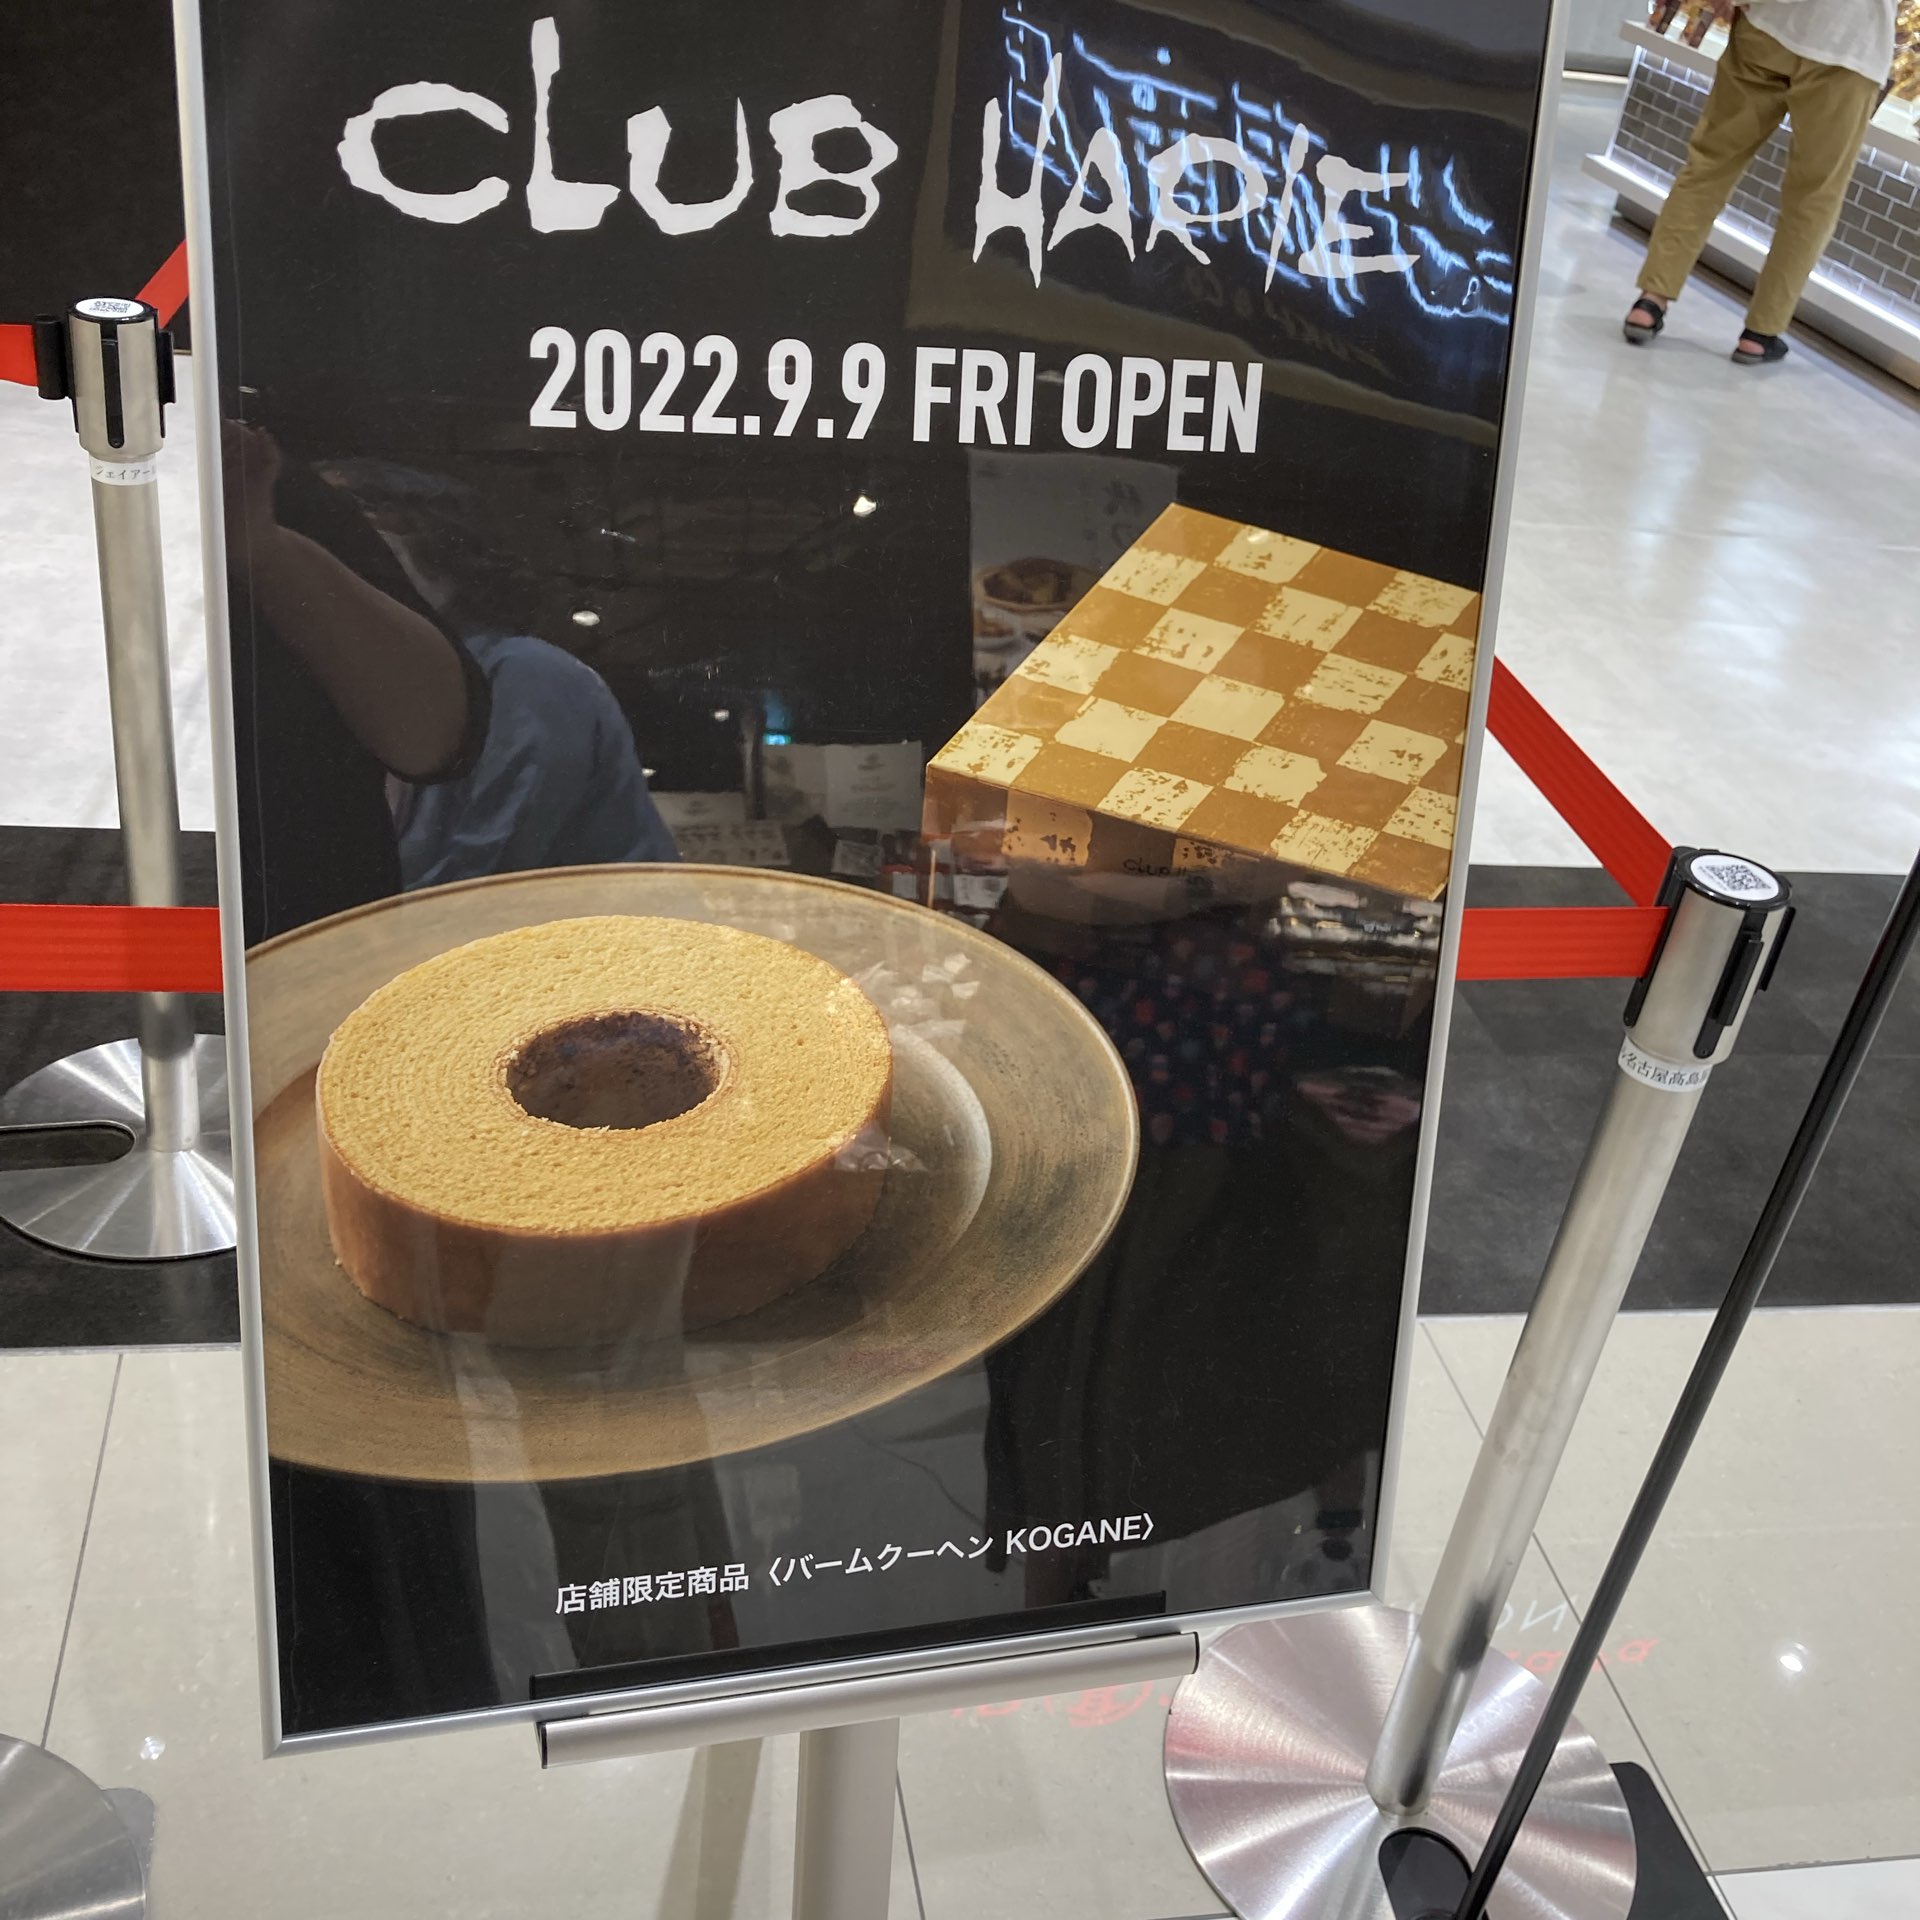 爱知县冈崎市Club Harie Open Baumkuchen人气西式点心店“Club Harie”在三河地区首次开店